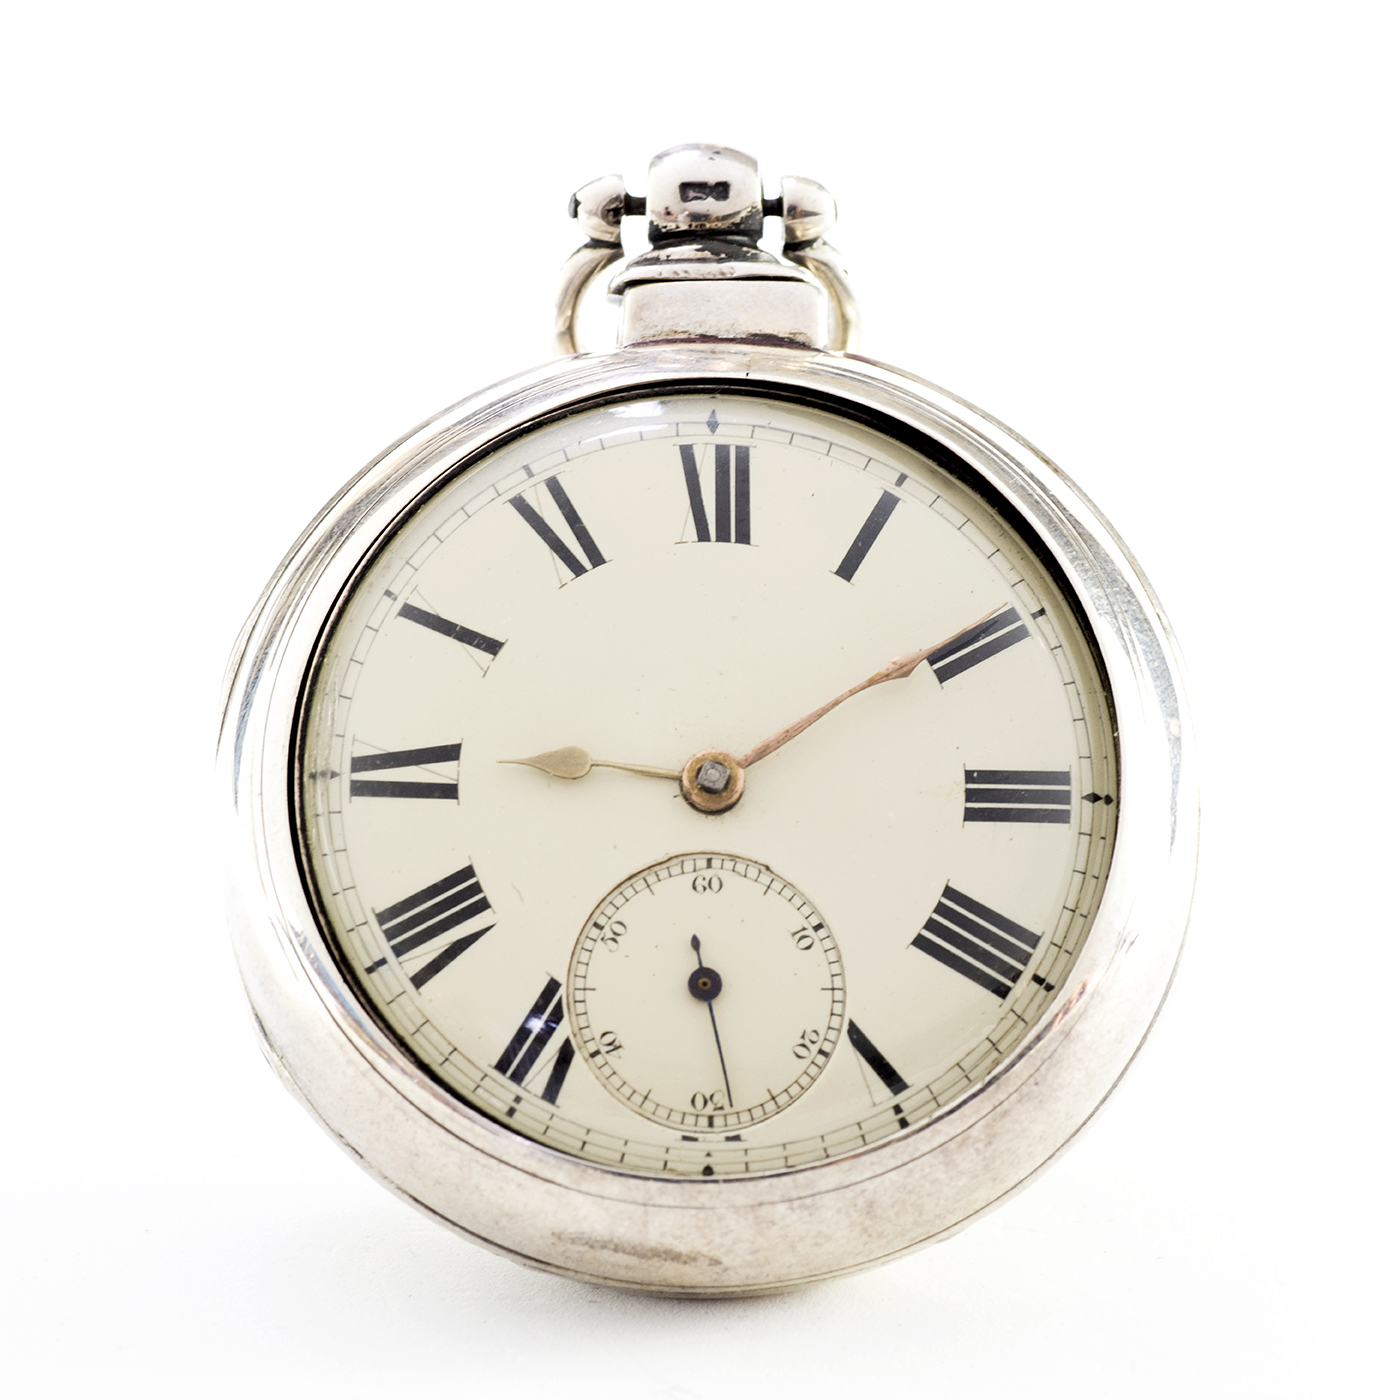 D. JAMES (Talgarth). Reloj Inglés de Bolsillo, lepine, Half Fusee (SemiCatalino). Inglaterra, 1876.